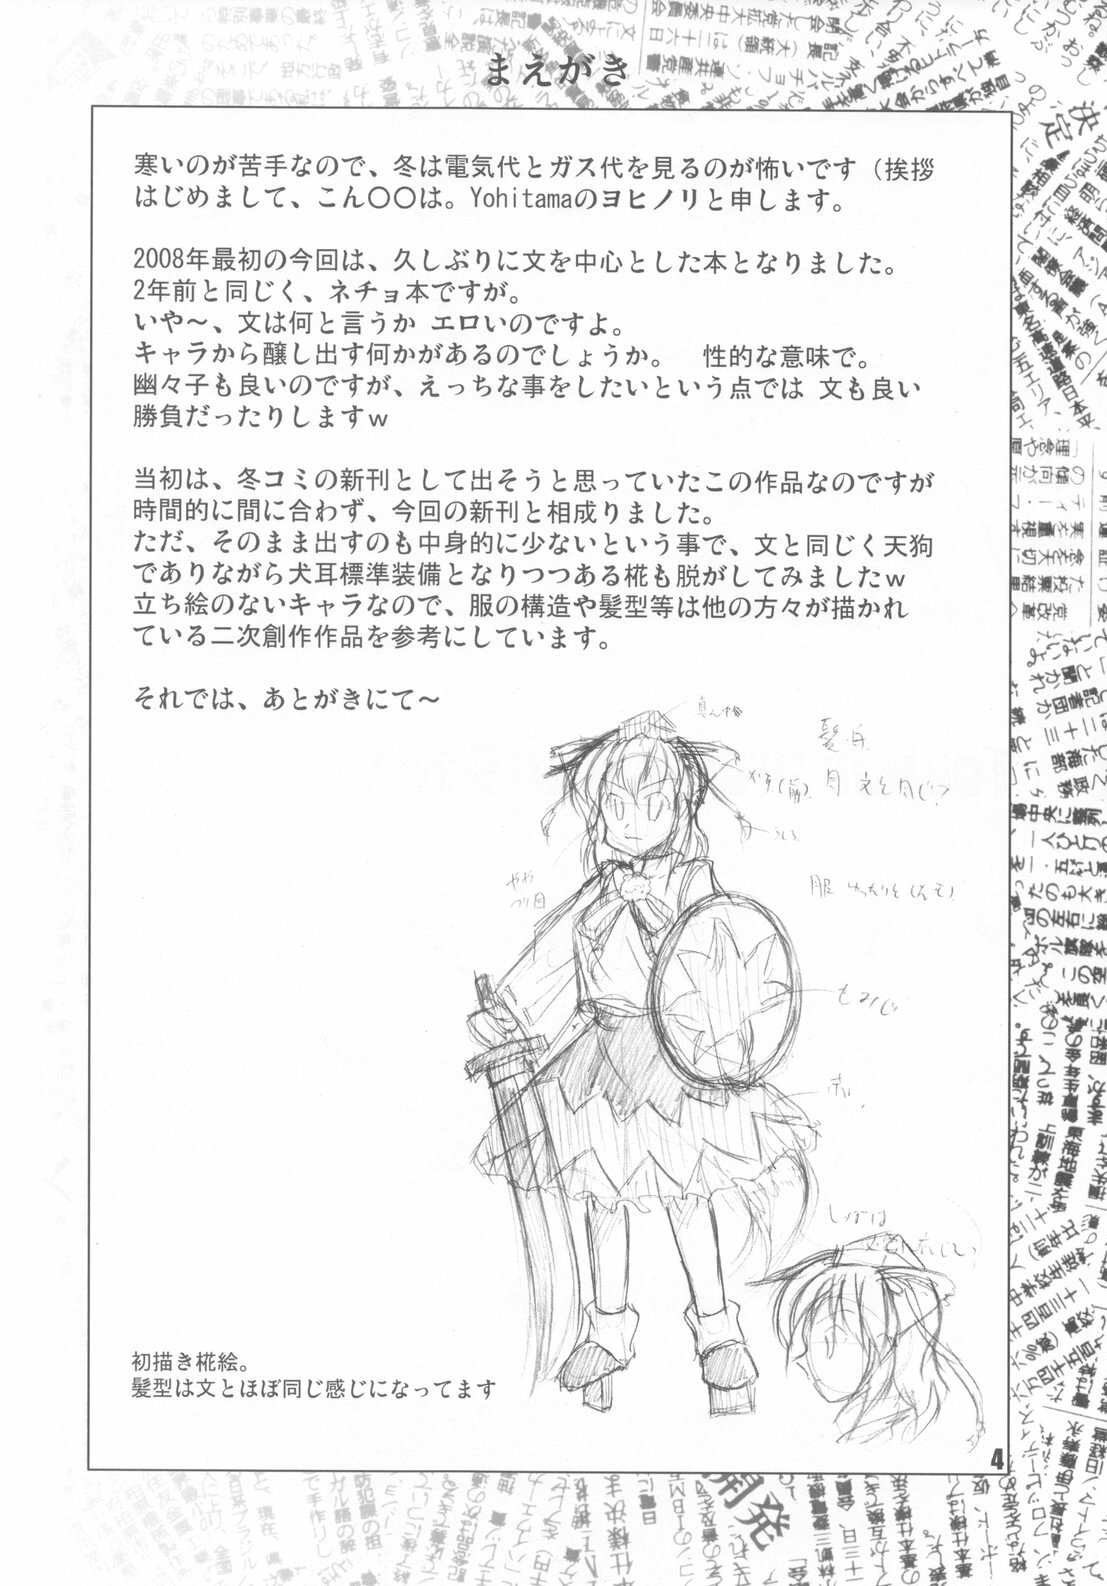 [Yohitama] 文取材 (touhou project) page 4 full